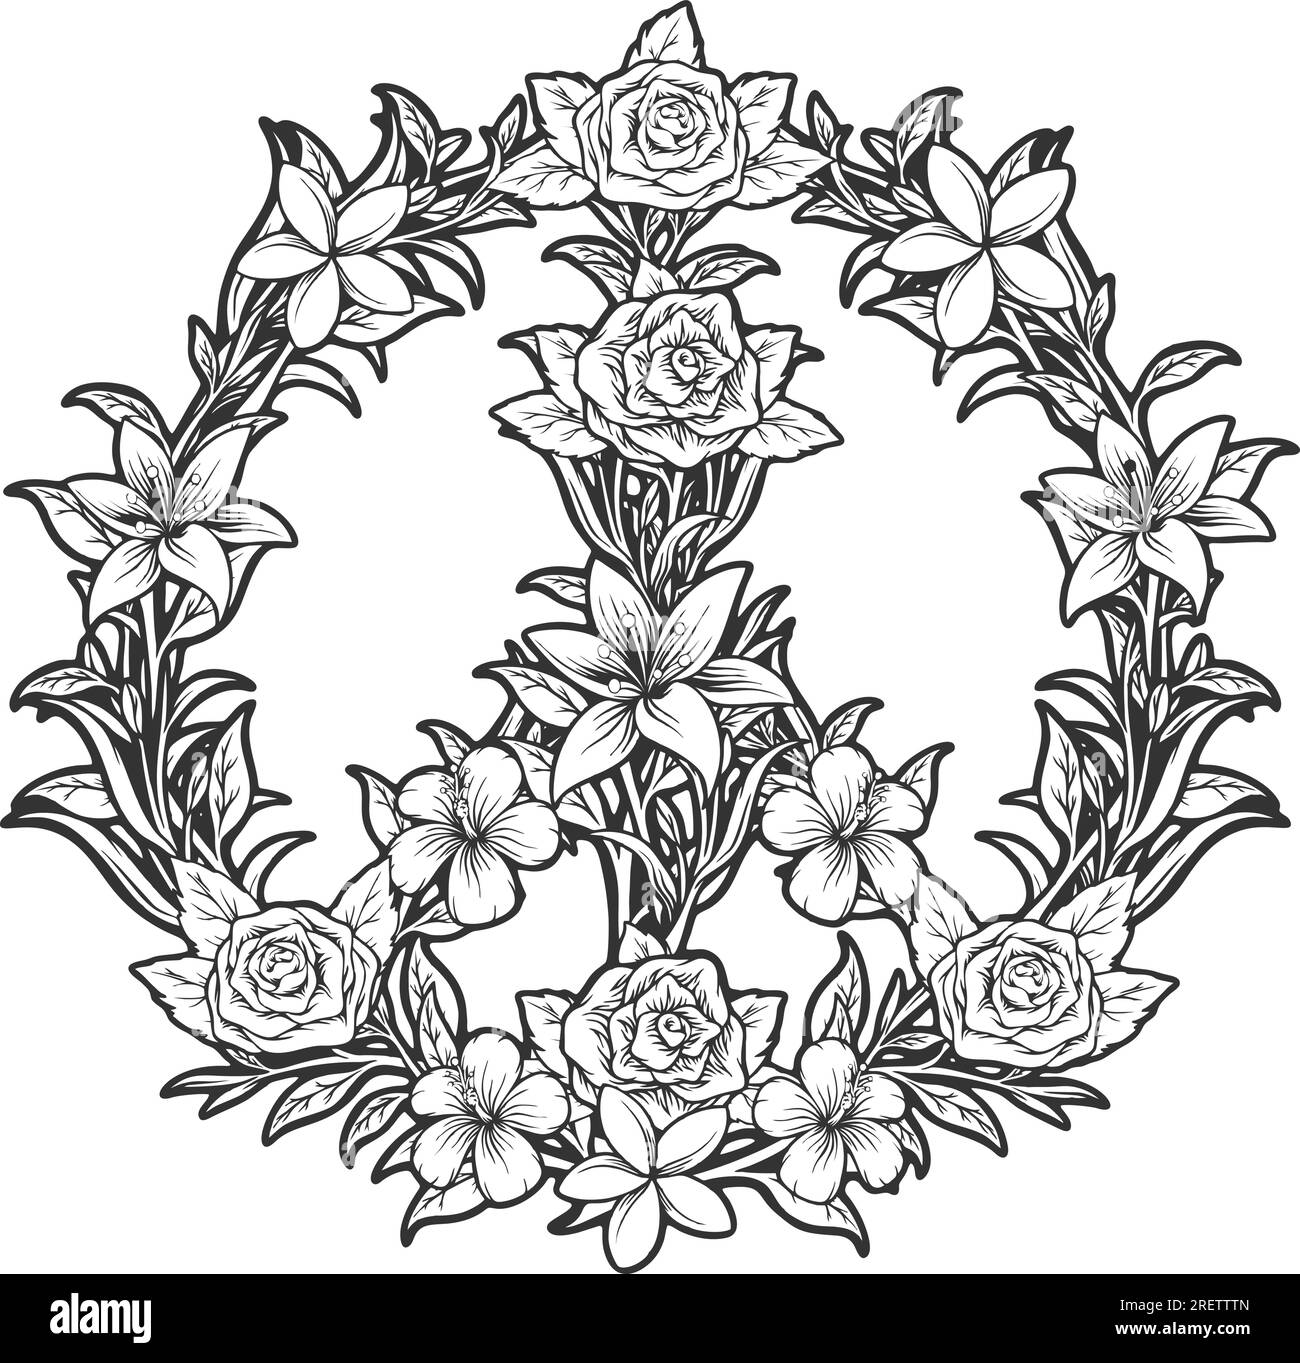 Symboles de paix Bohemian rhapsody avec des illustrations vectorielles monochromes de décor floral pour votre logo de travail, t-shirt de marchandises, autocollants et dessins d'étiquettes, Illustration de Vecteur